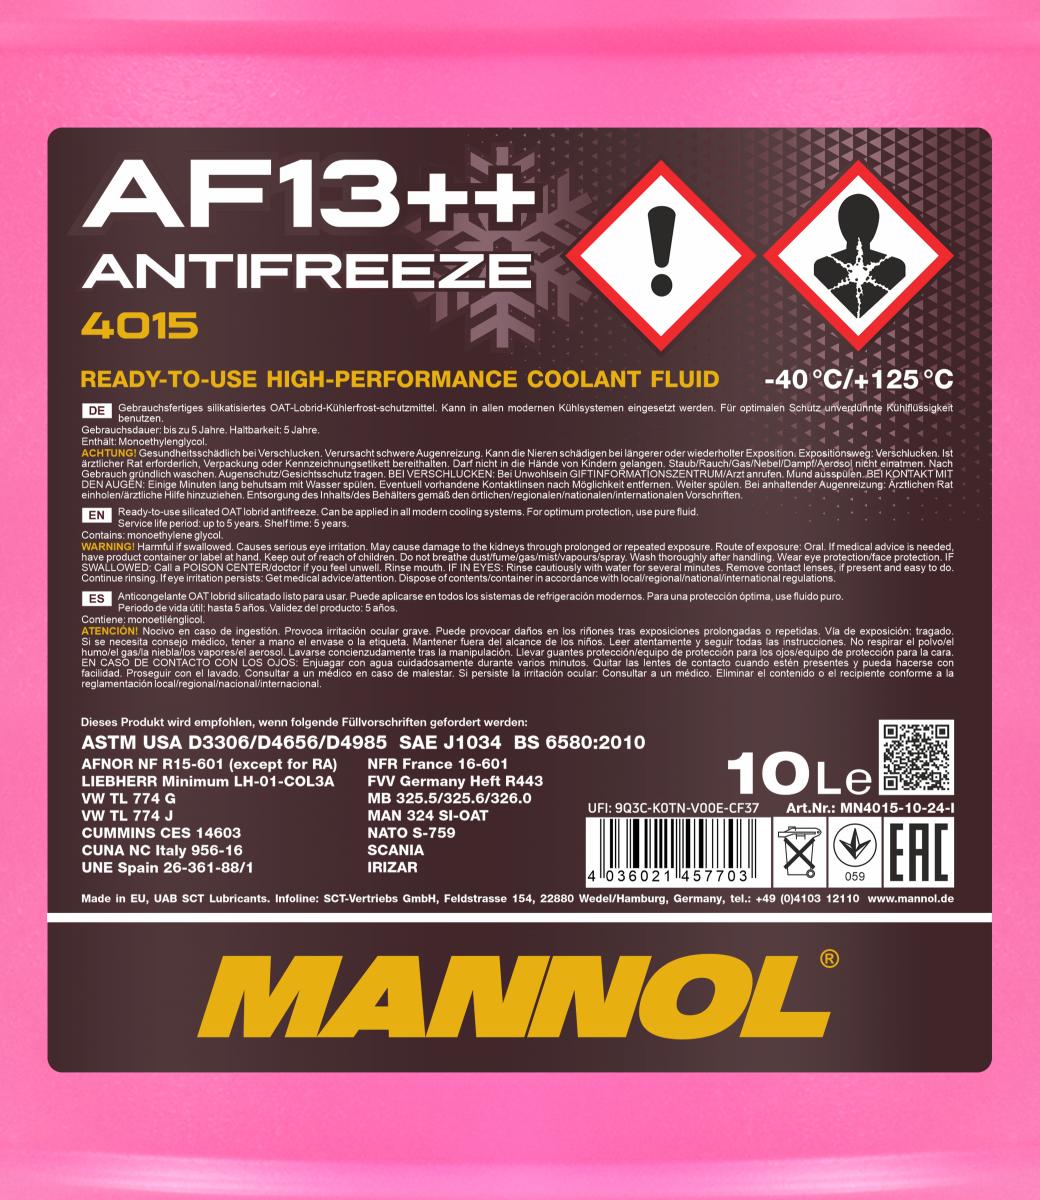 MN Antifreeze AF 13++ (-40) 4036021457703 MN4015-10